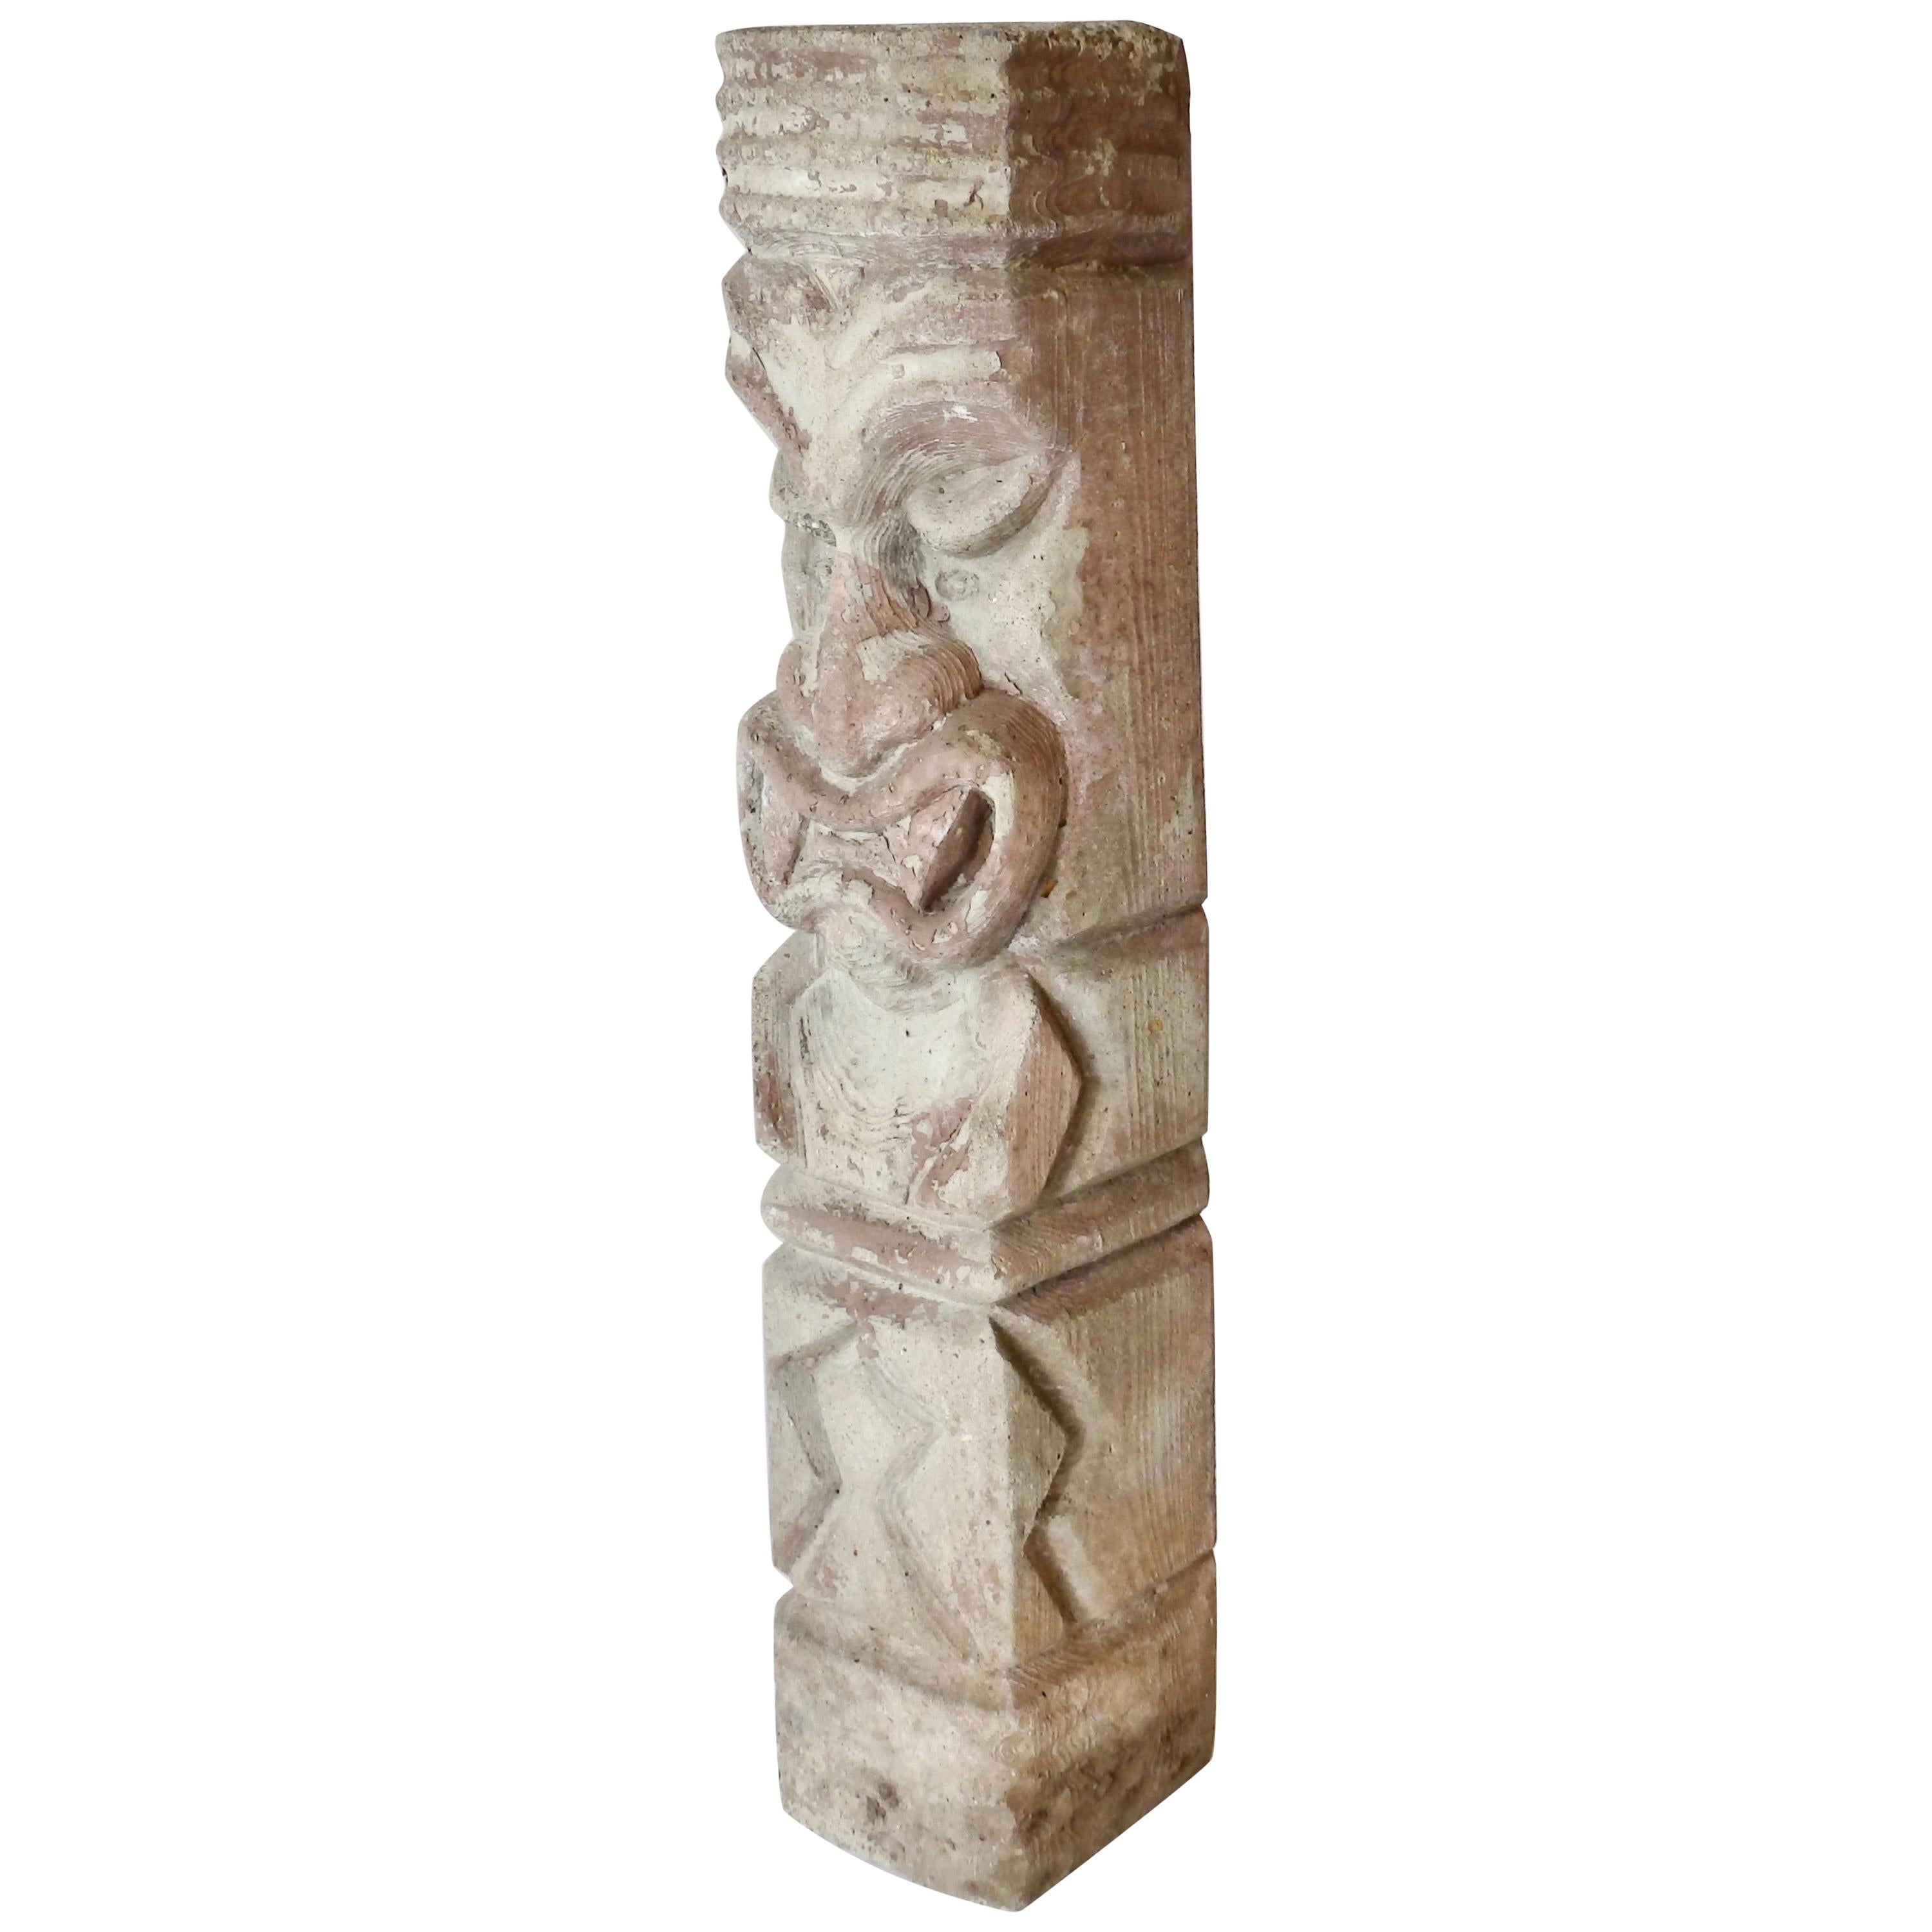 Heavy cast cement Tiki totem sculpture For Sale